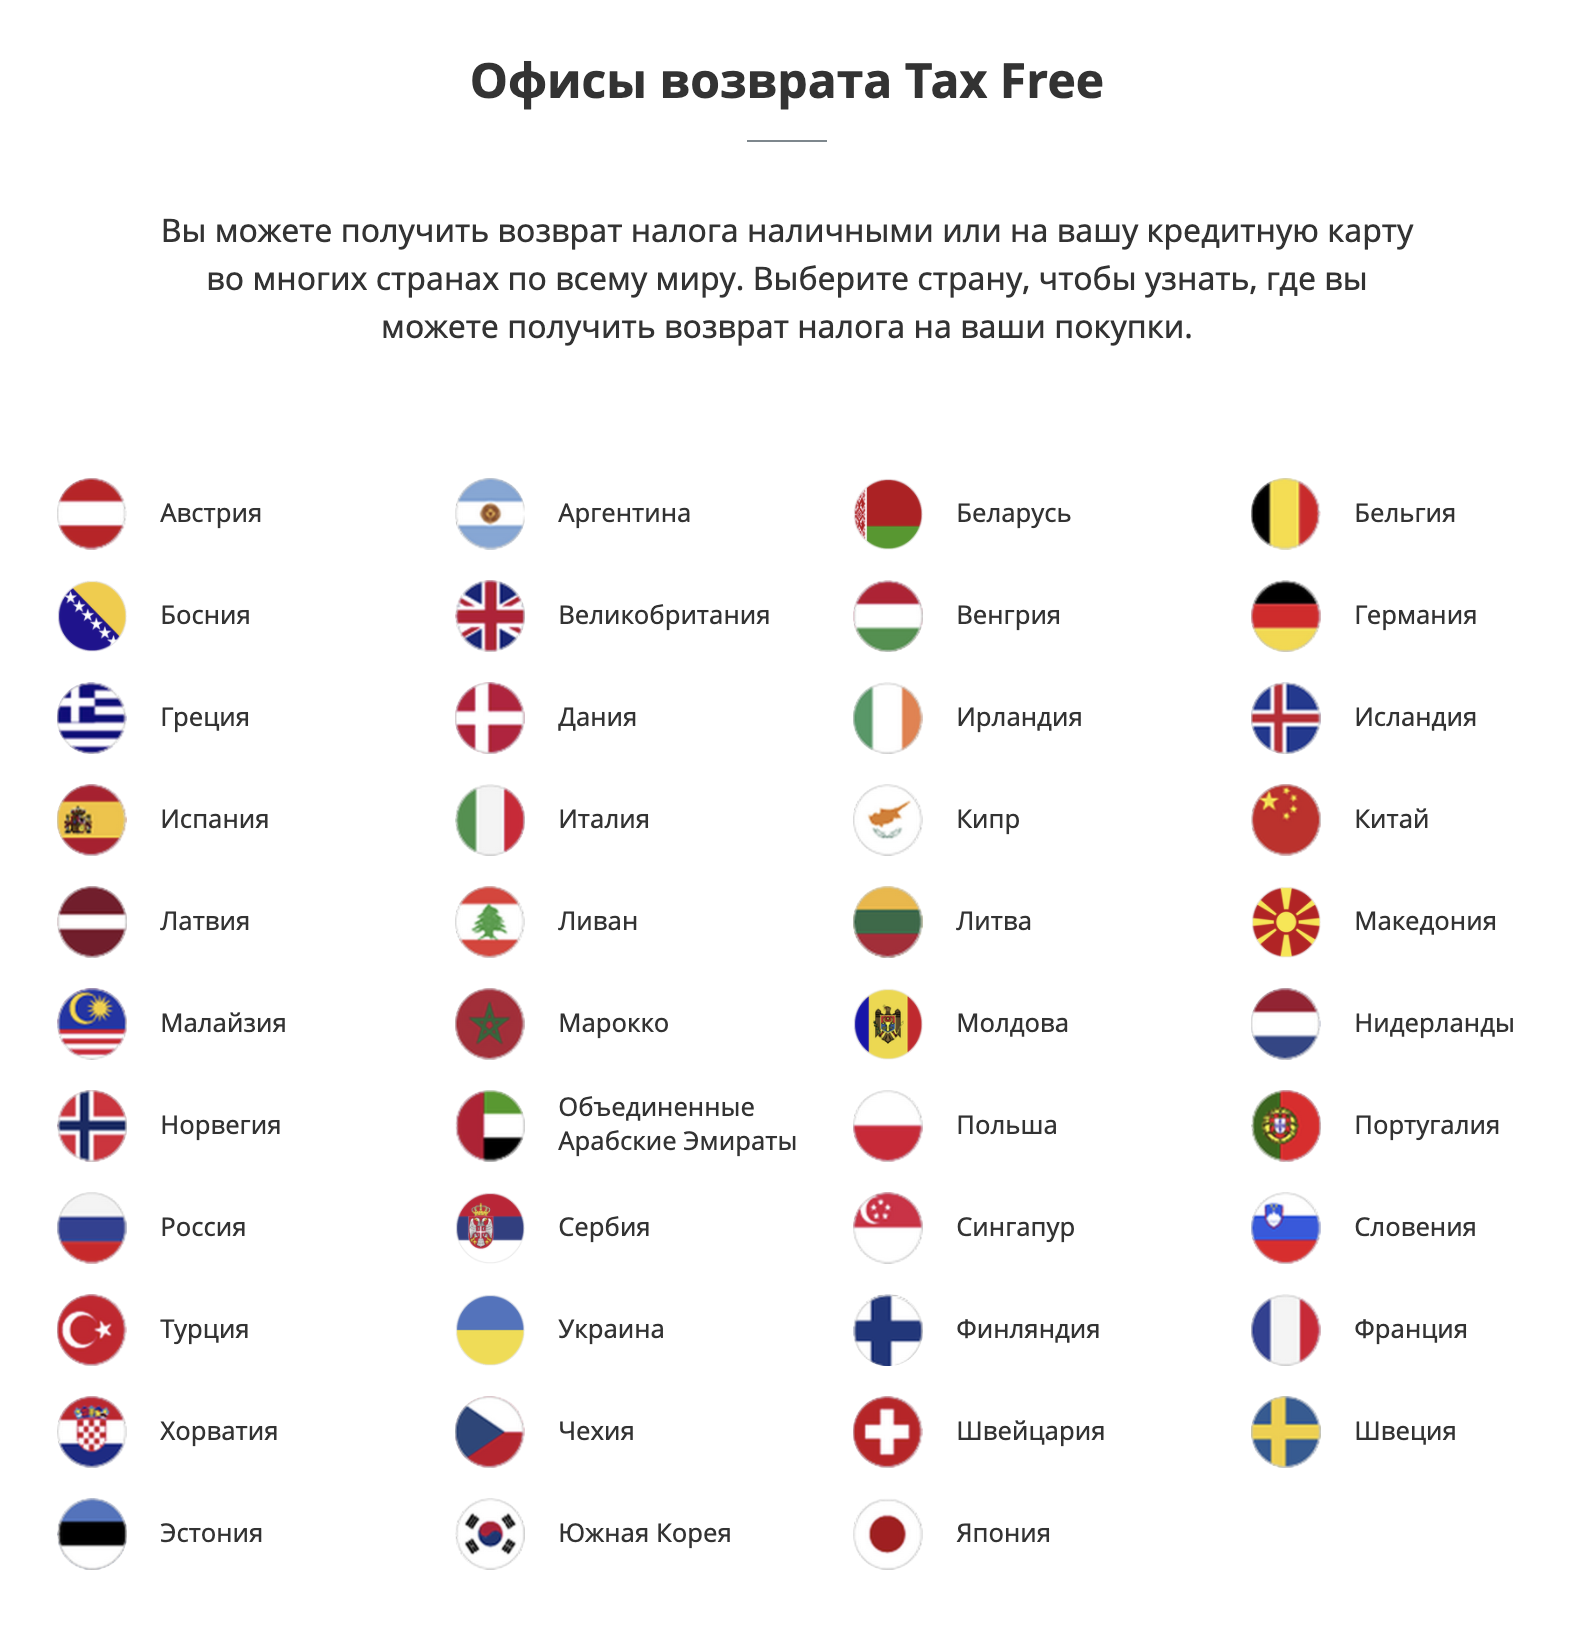 У «Глобал-блю» офисы возврата для каждой страны, где работает оператор, можно посмотреть на сайте. Источник: globalblue.ru